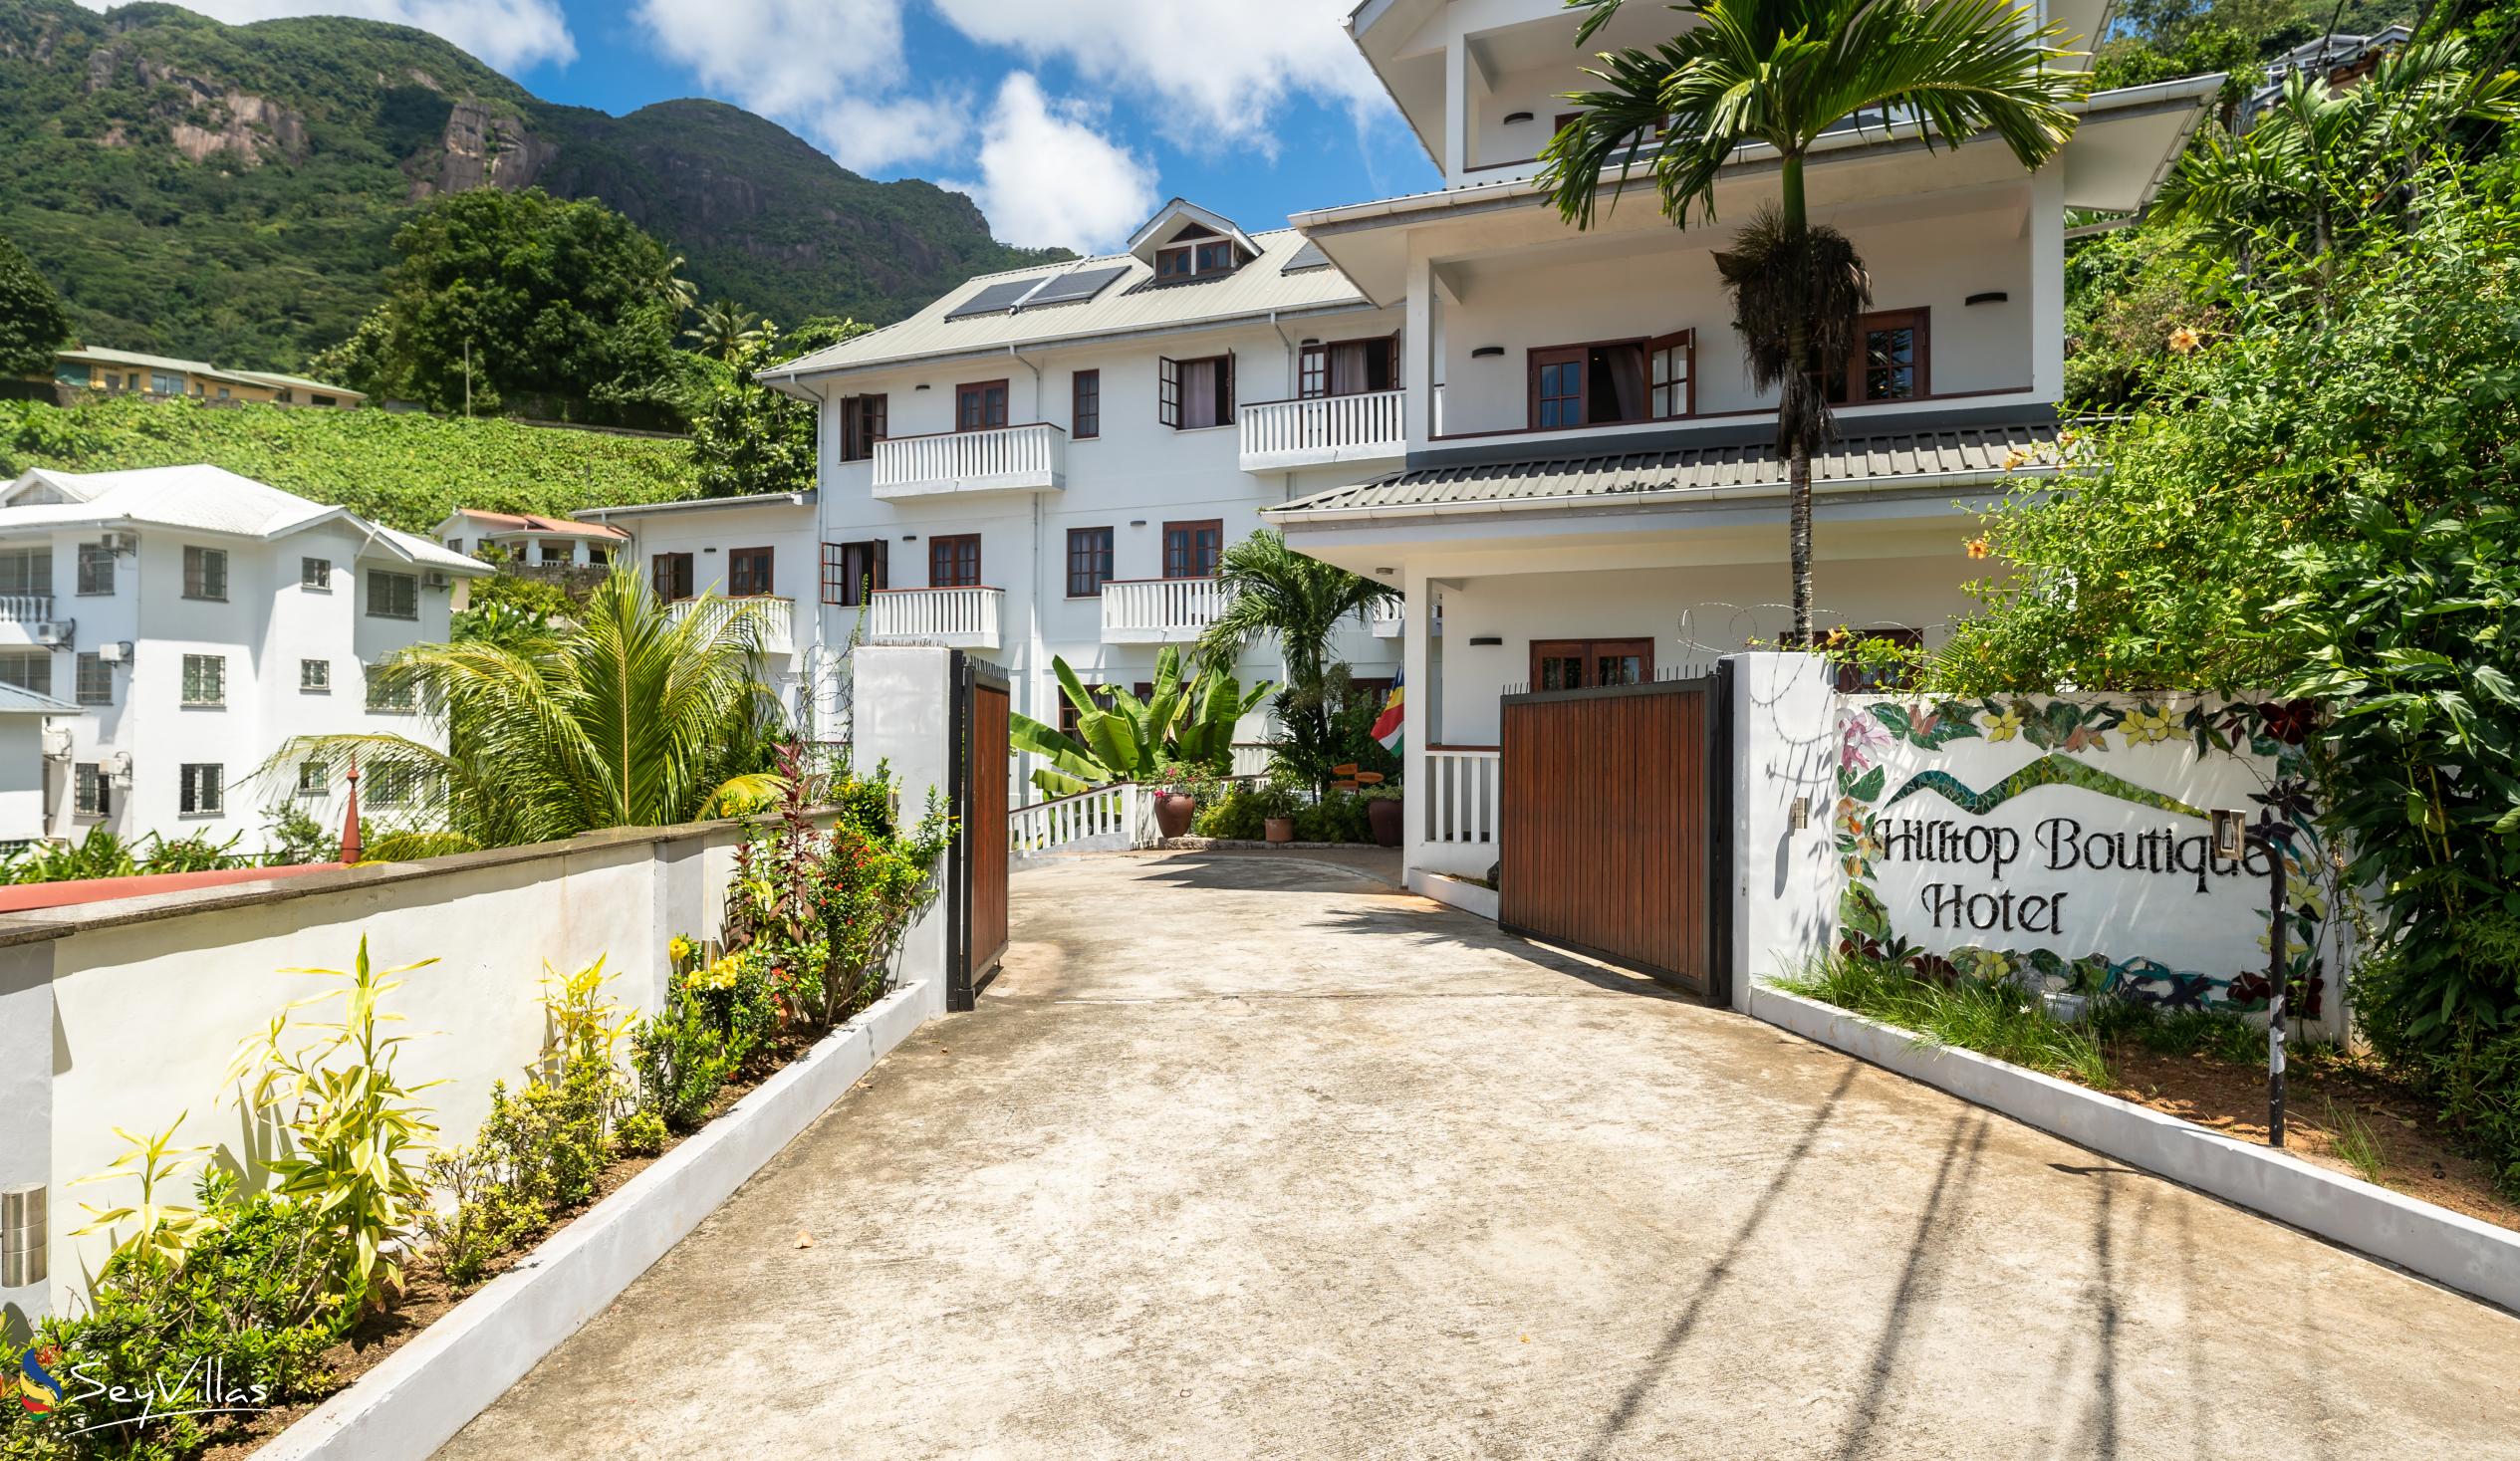 Foto 6: Hilltop Boutique Hotel - Extérieur - Mahé (Seychelles)